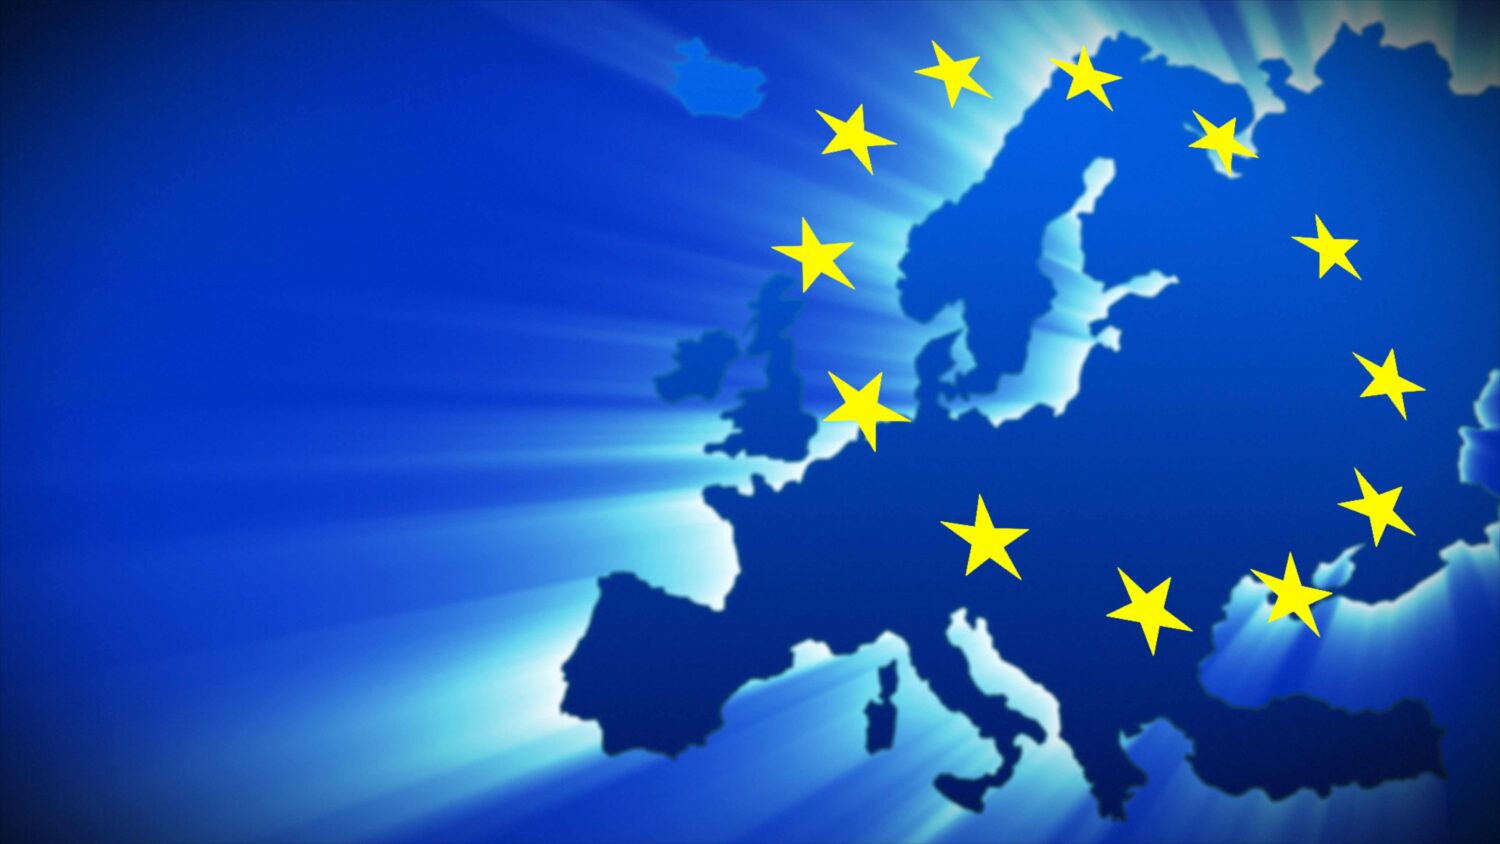 ΕΕ: Νέοι κανόνες ΦΠΑ για το ηλεκτρονικό εμπόριο θα ισχύσουν από την 1η Ιουλίου